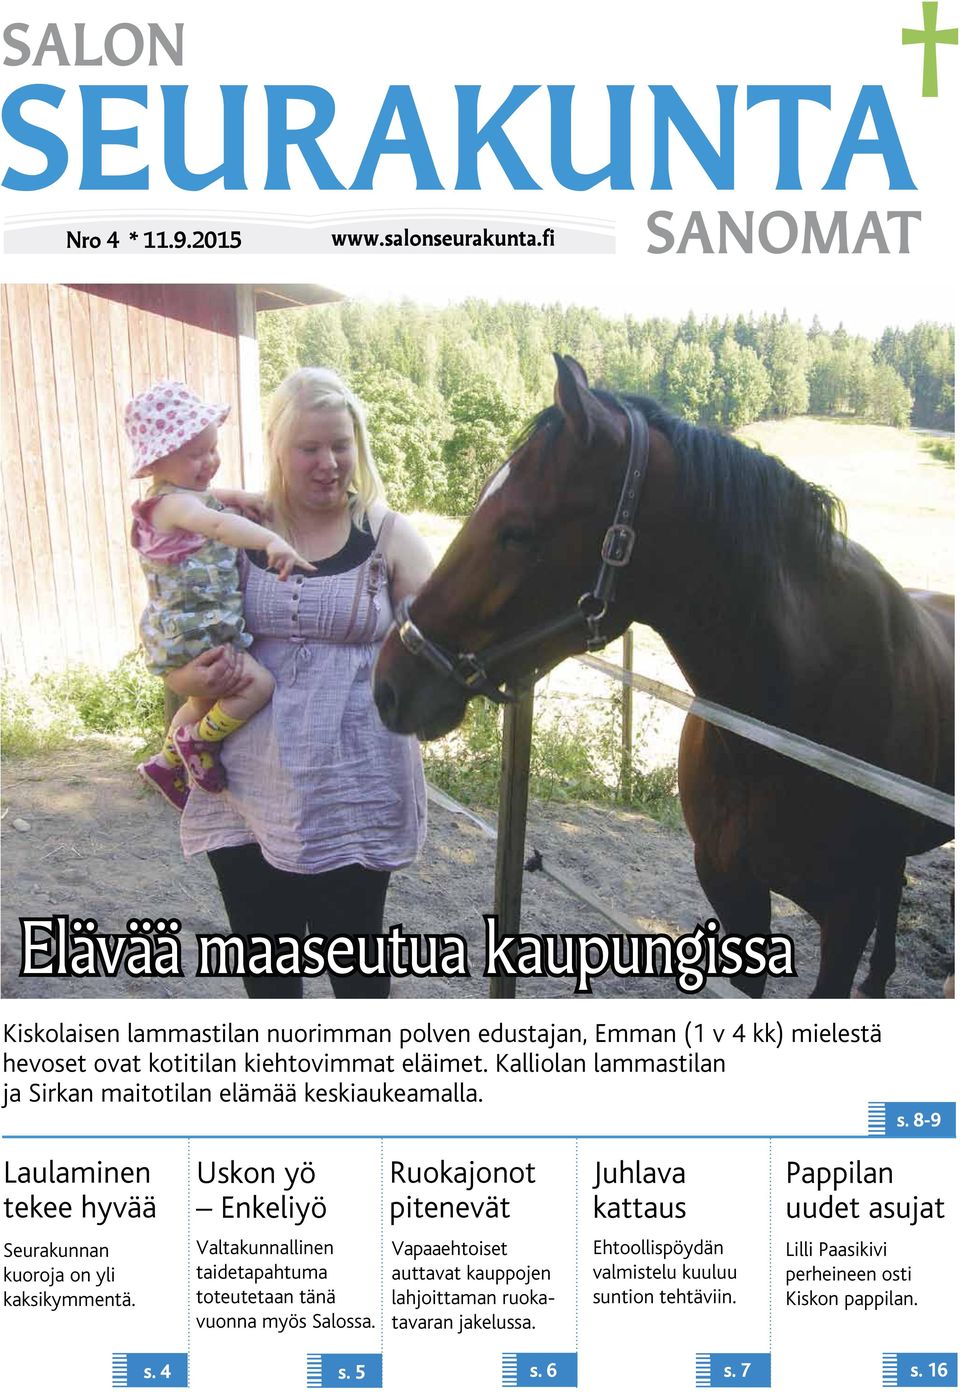 Kalliolan lammastilan ja Sirkan maitotilan elämää keskiaukeamalla. s.